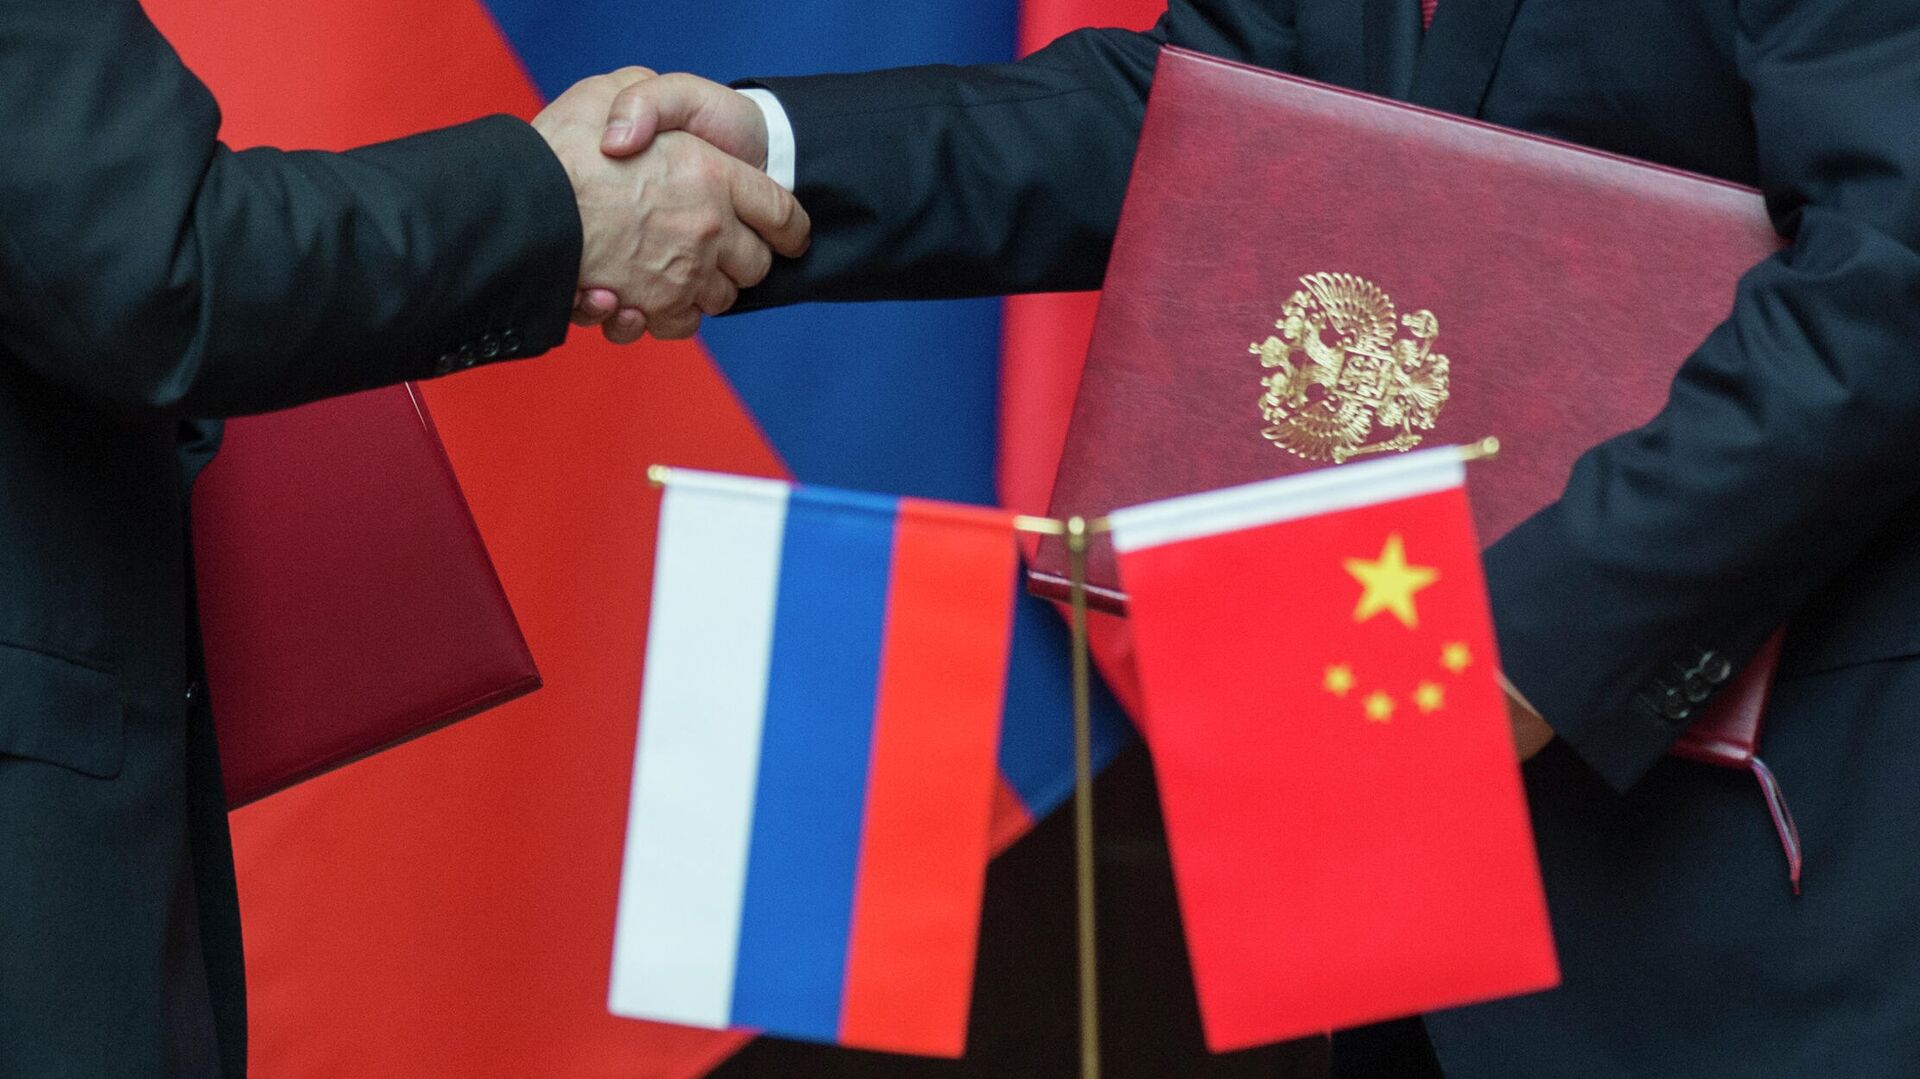 重要时刻，习主席和普京总统把中俄关系领进新时代 - 中国日报网